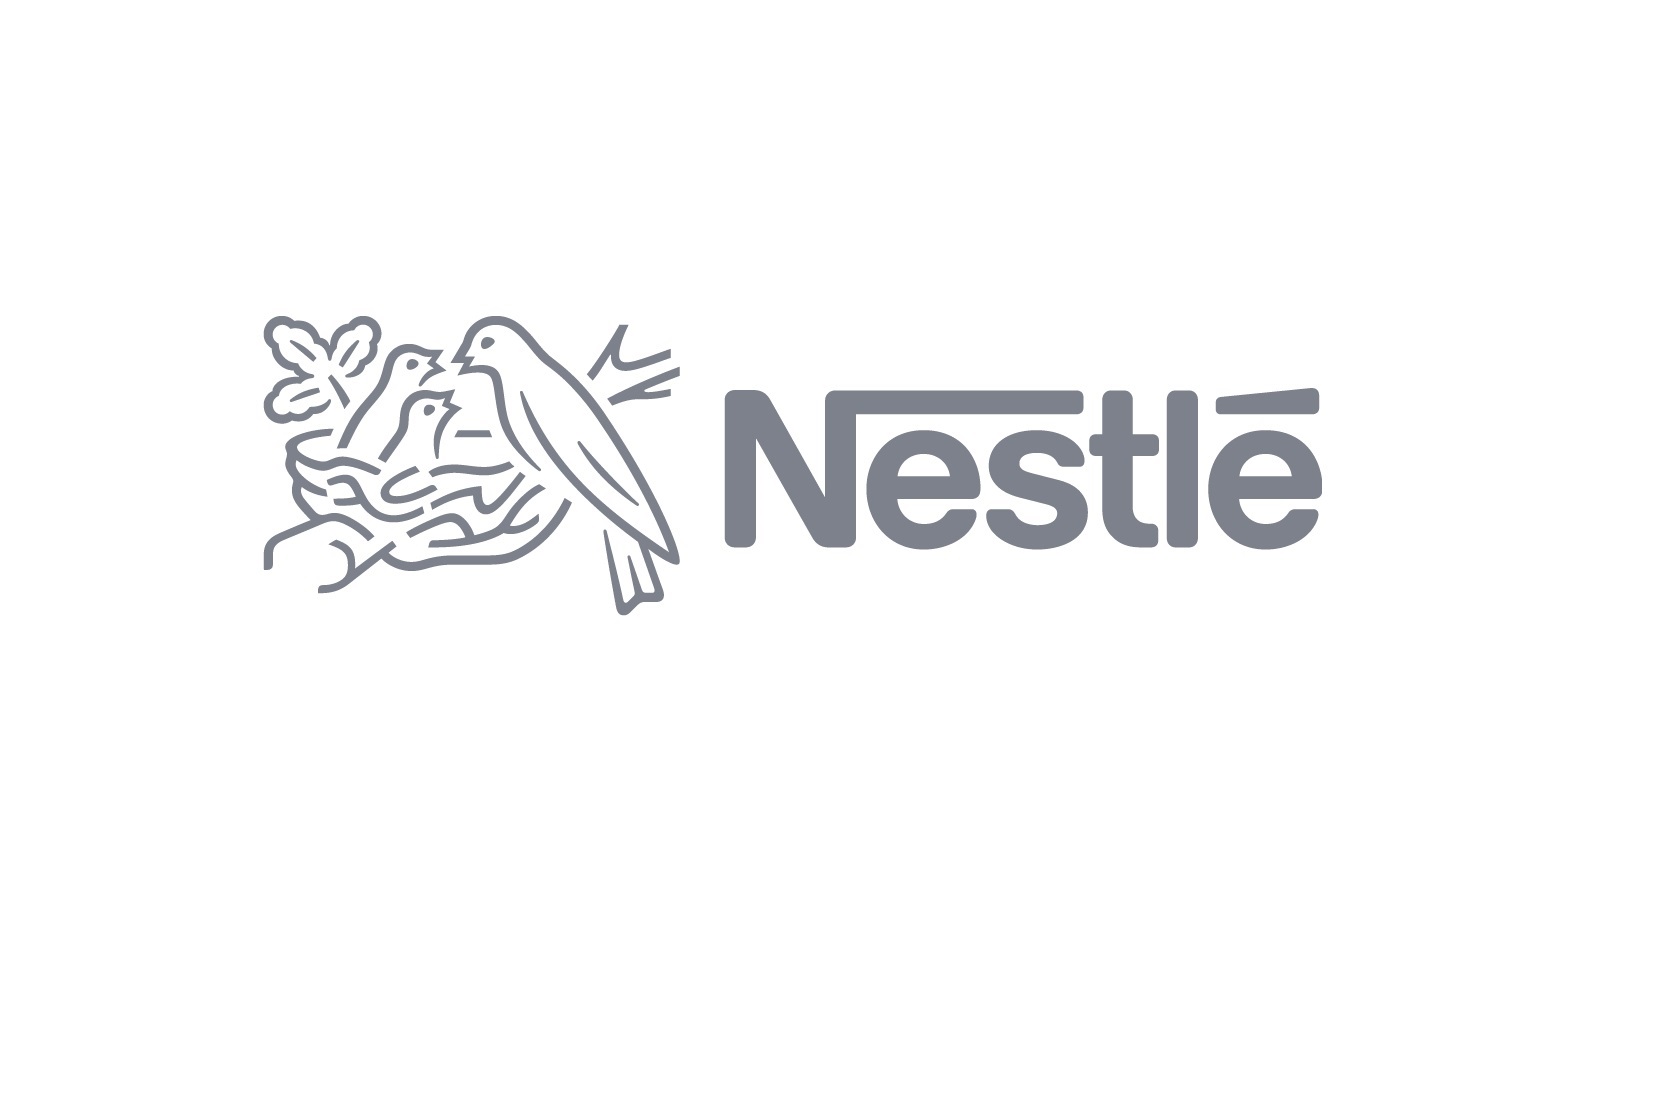 Nestlé rozbudowuje fabrykę w Nowej Wsi Wrocławskiej